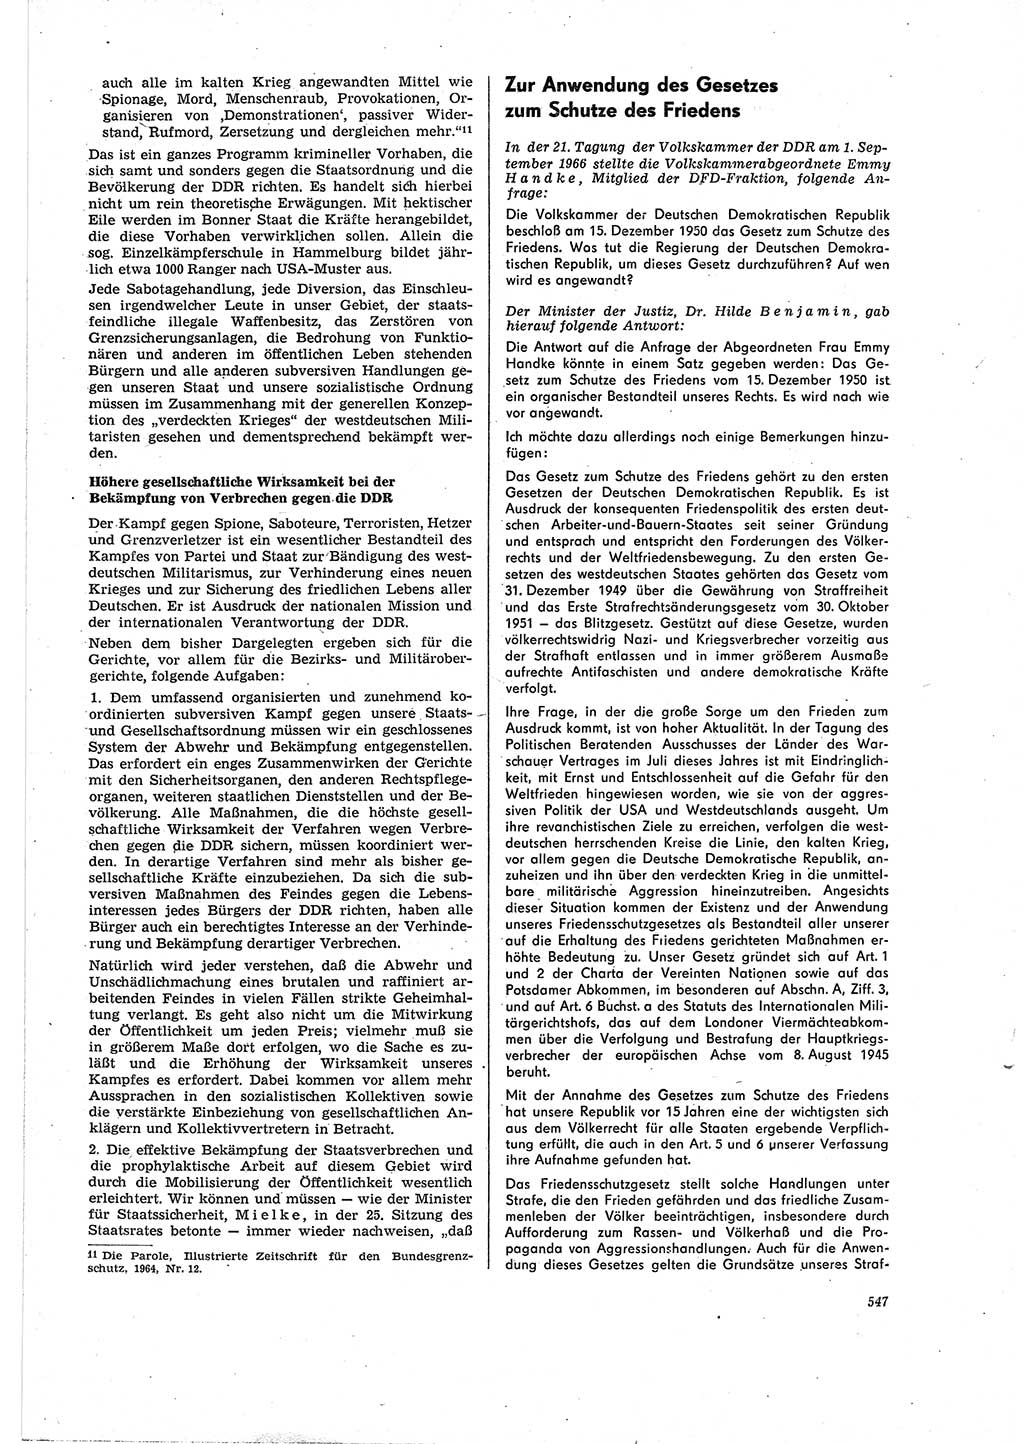 Neue Justiz (NJ), Zeitschrift für Recht und Rechtswissenschaft [Deutsche Demokratische Republik (DDR)], 20. Jahrgang 1966, Seite 547 (NJ DDR 1966, S. 547)